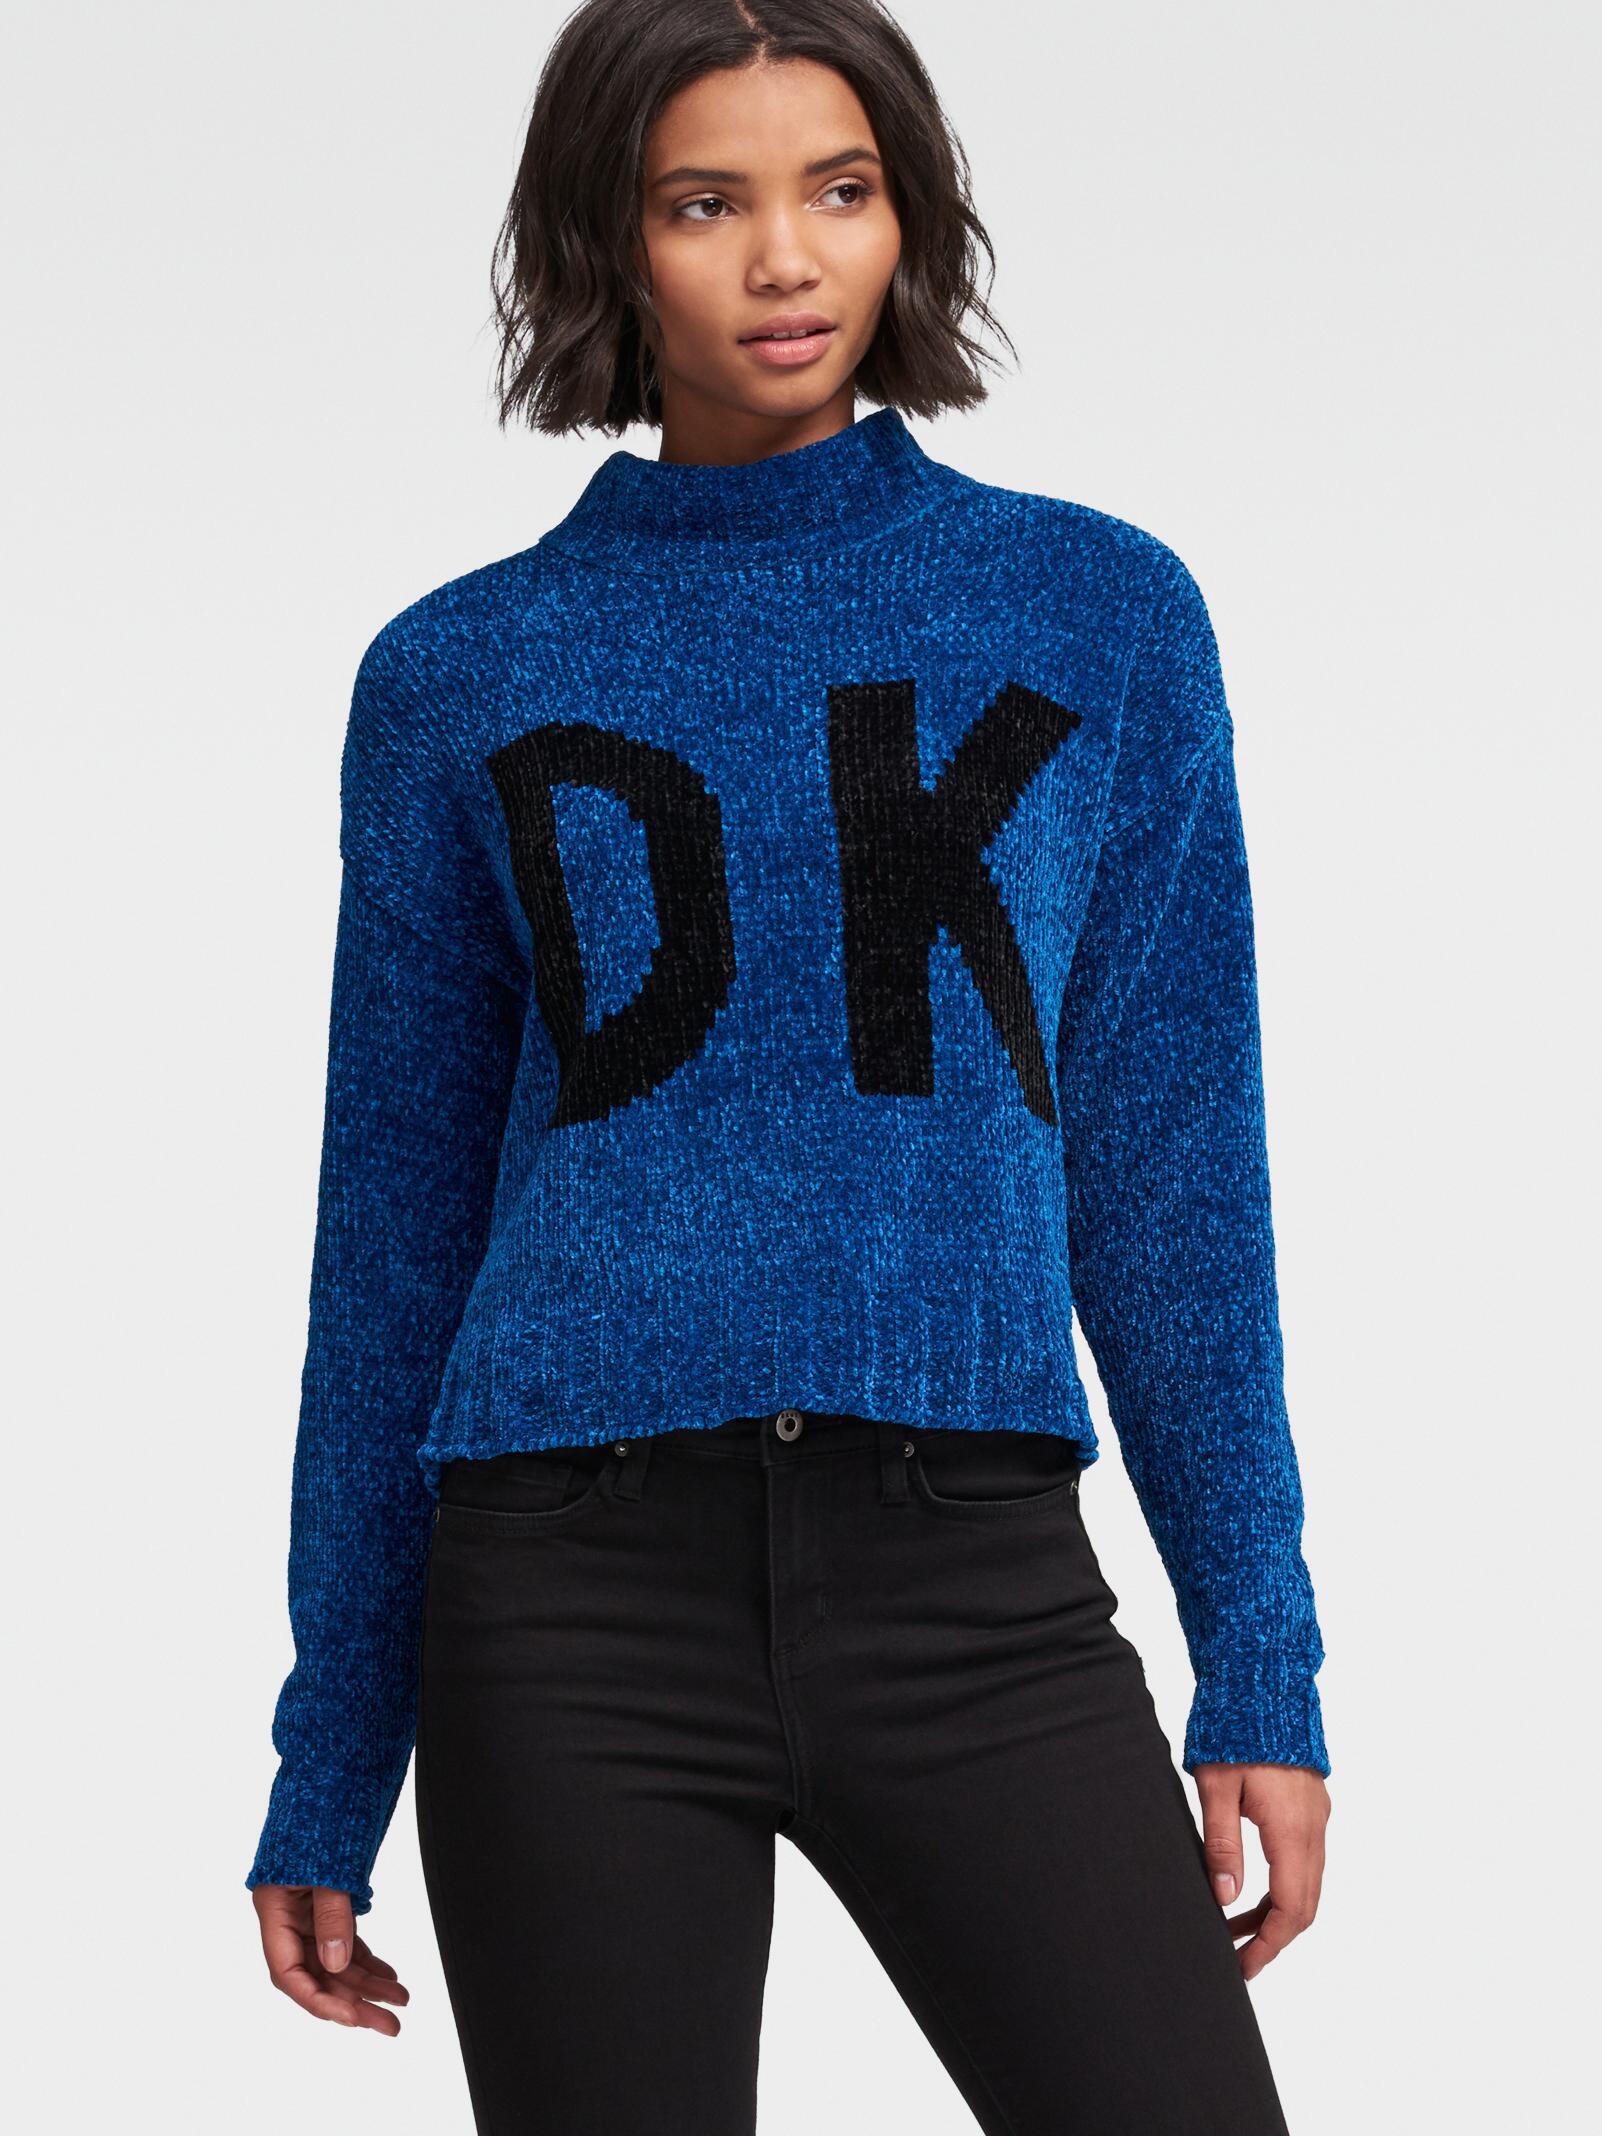 dkny logo sweater